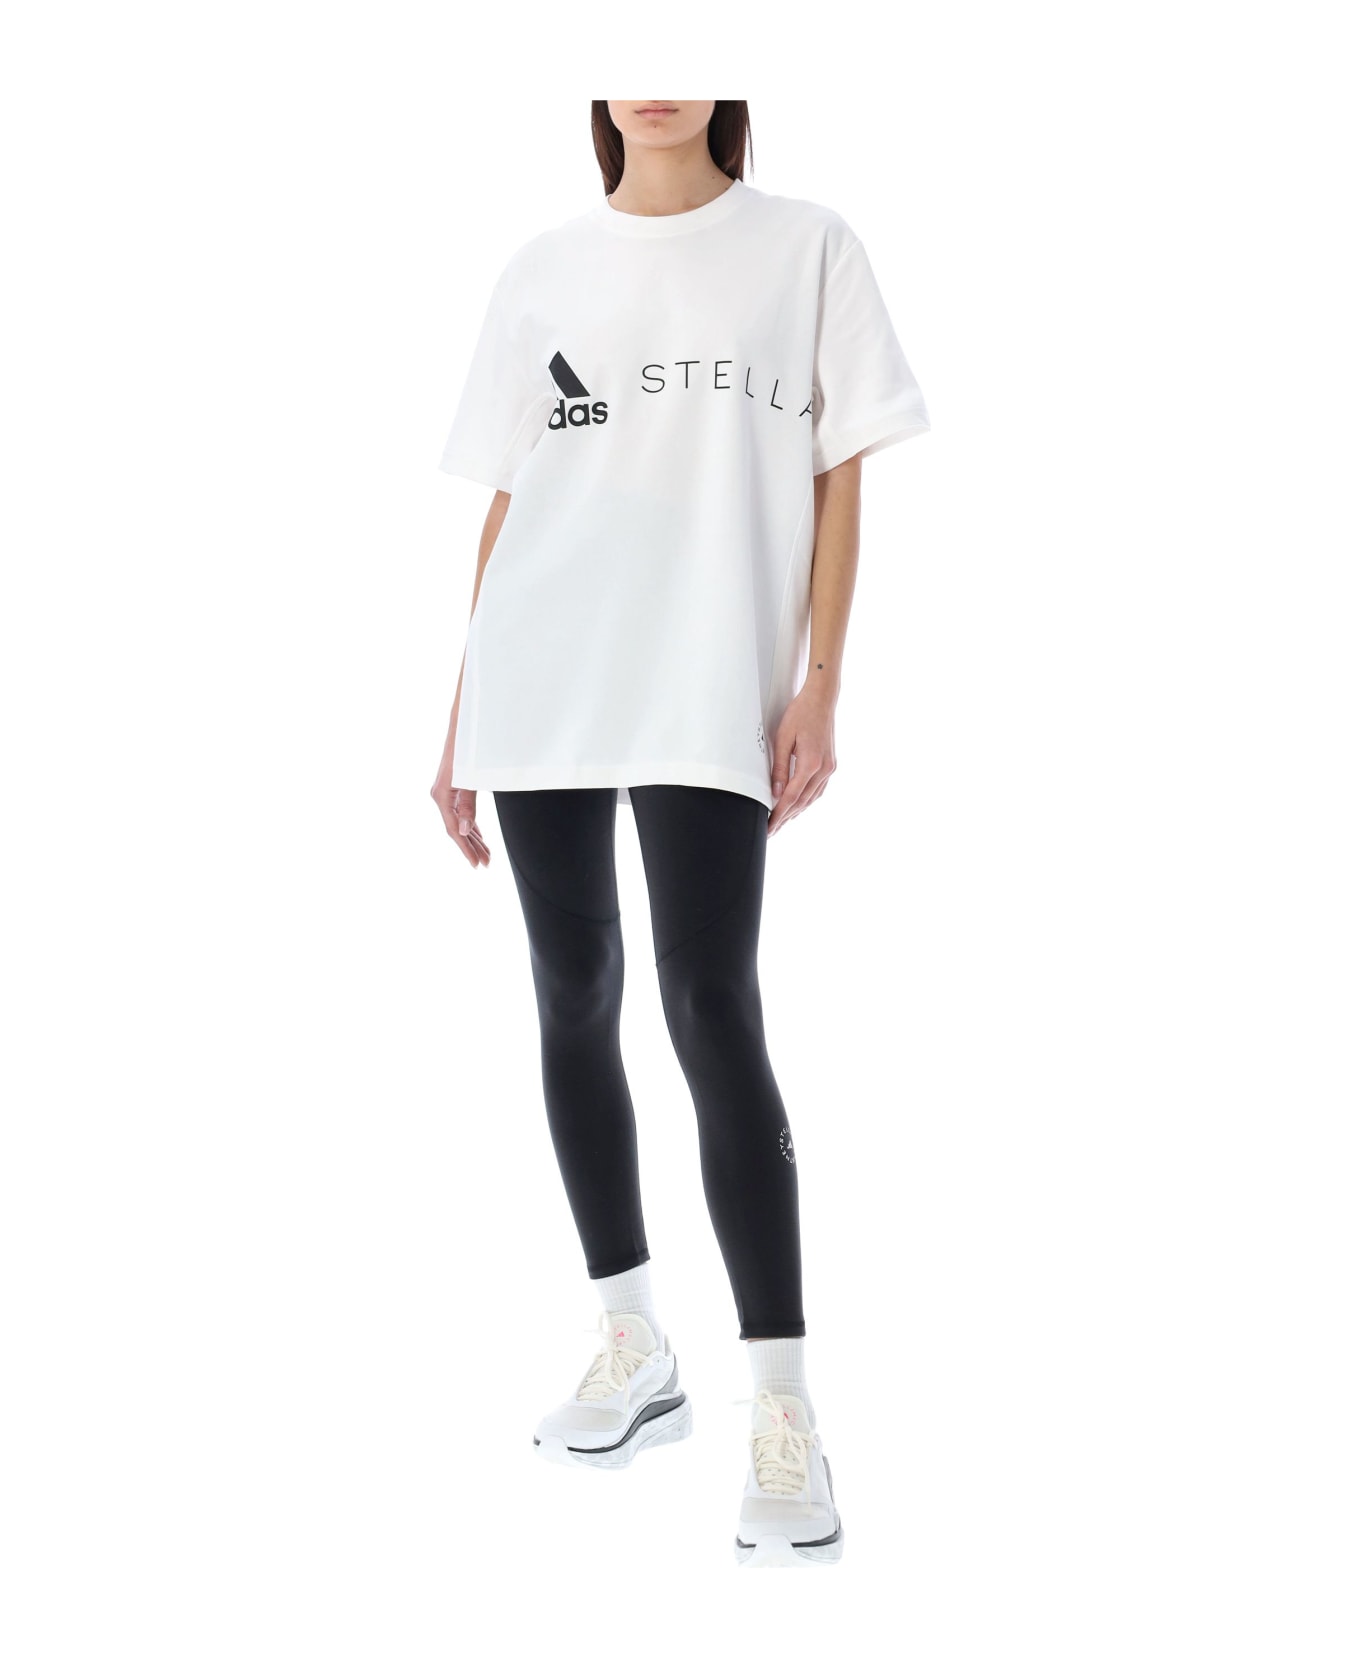 Adidas by Stella McCartney Logo T-shirt - Bianco Tシャツ